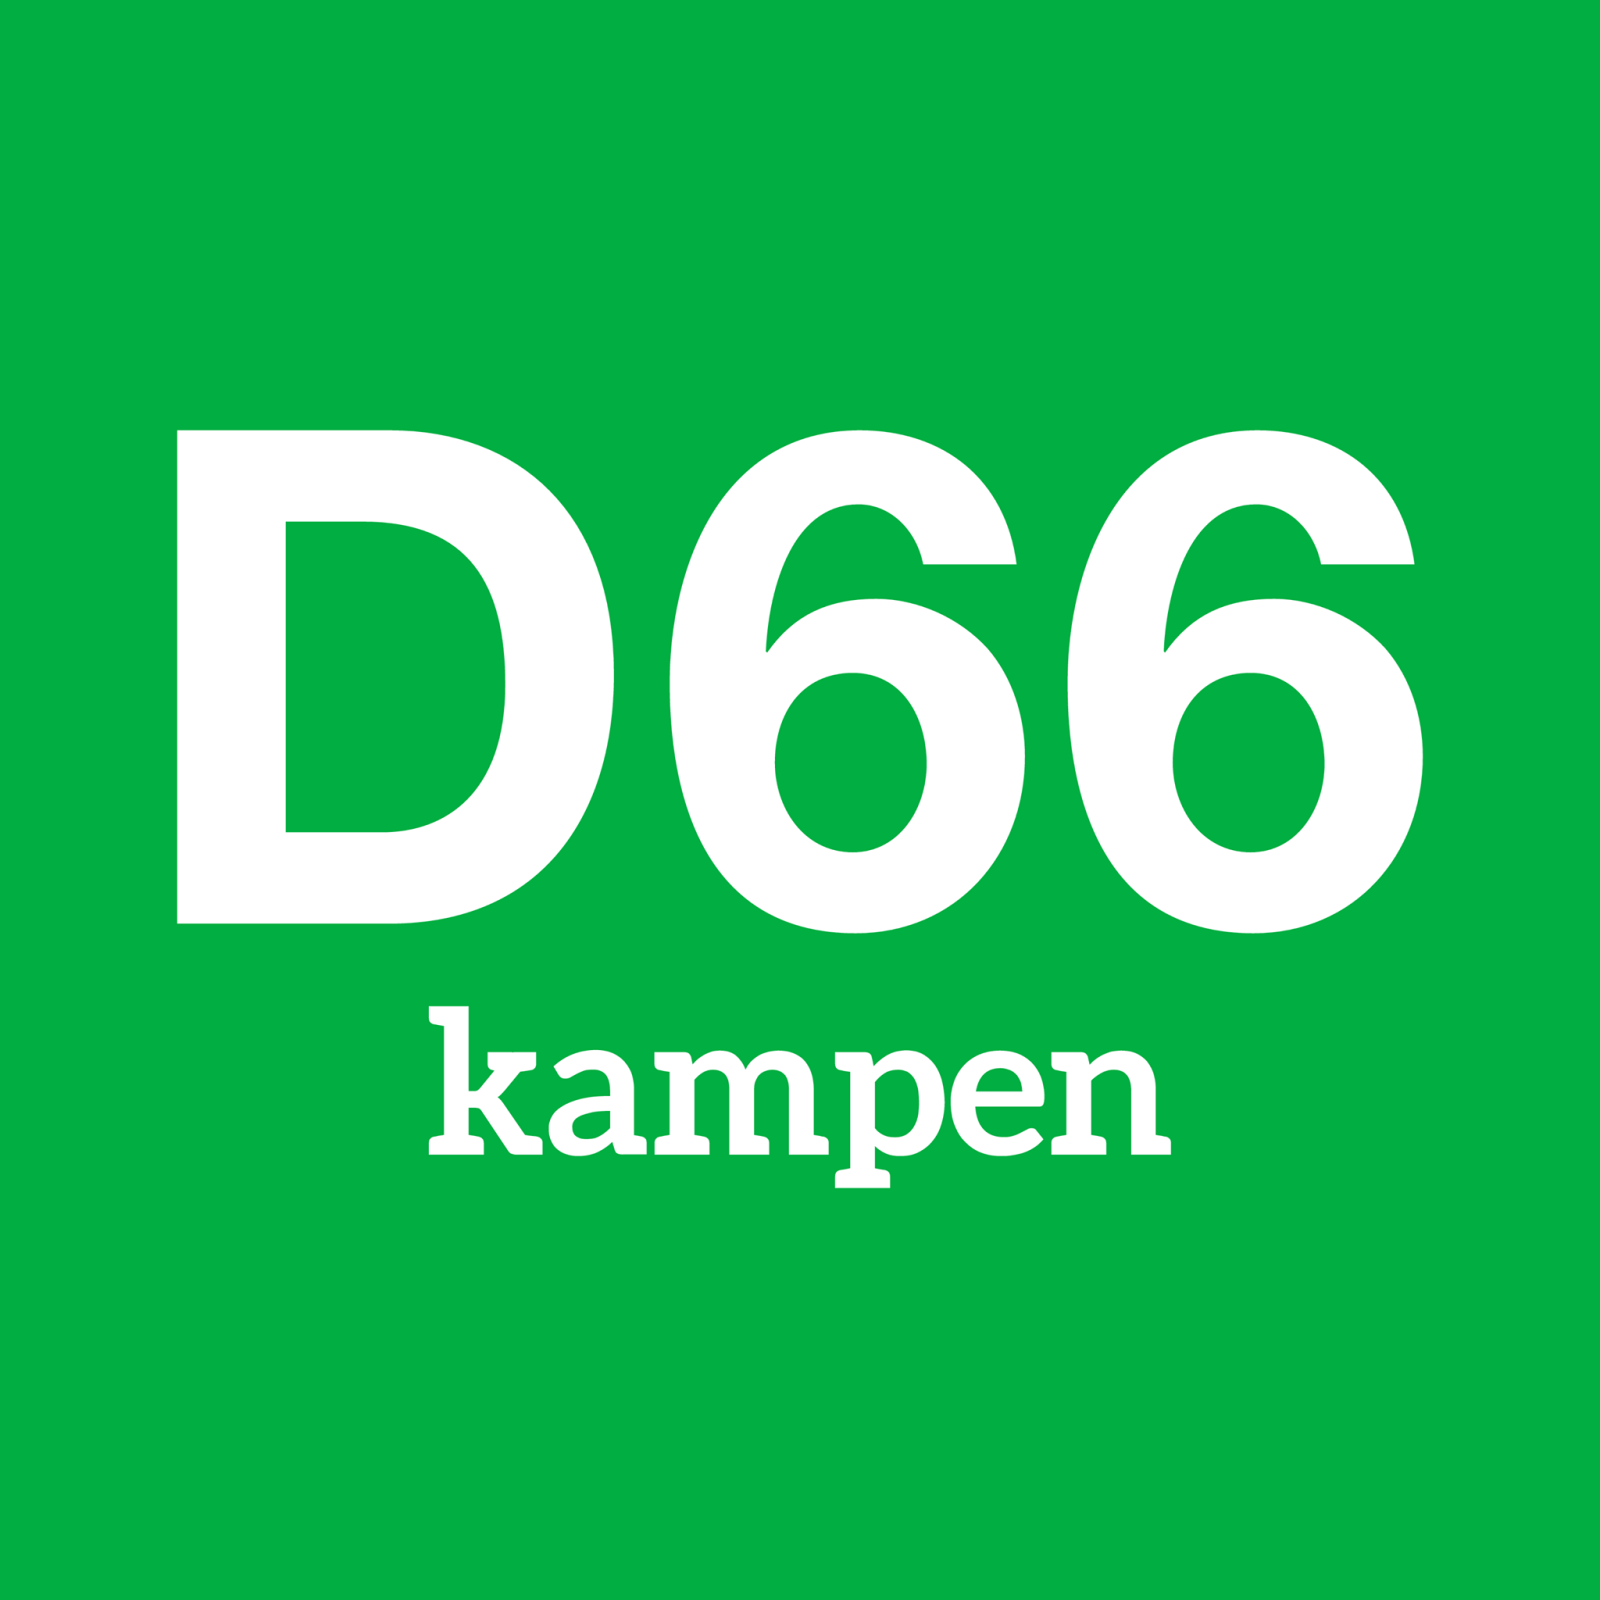 D66 legt leden ambitieus programma voor